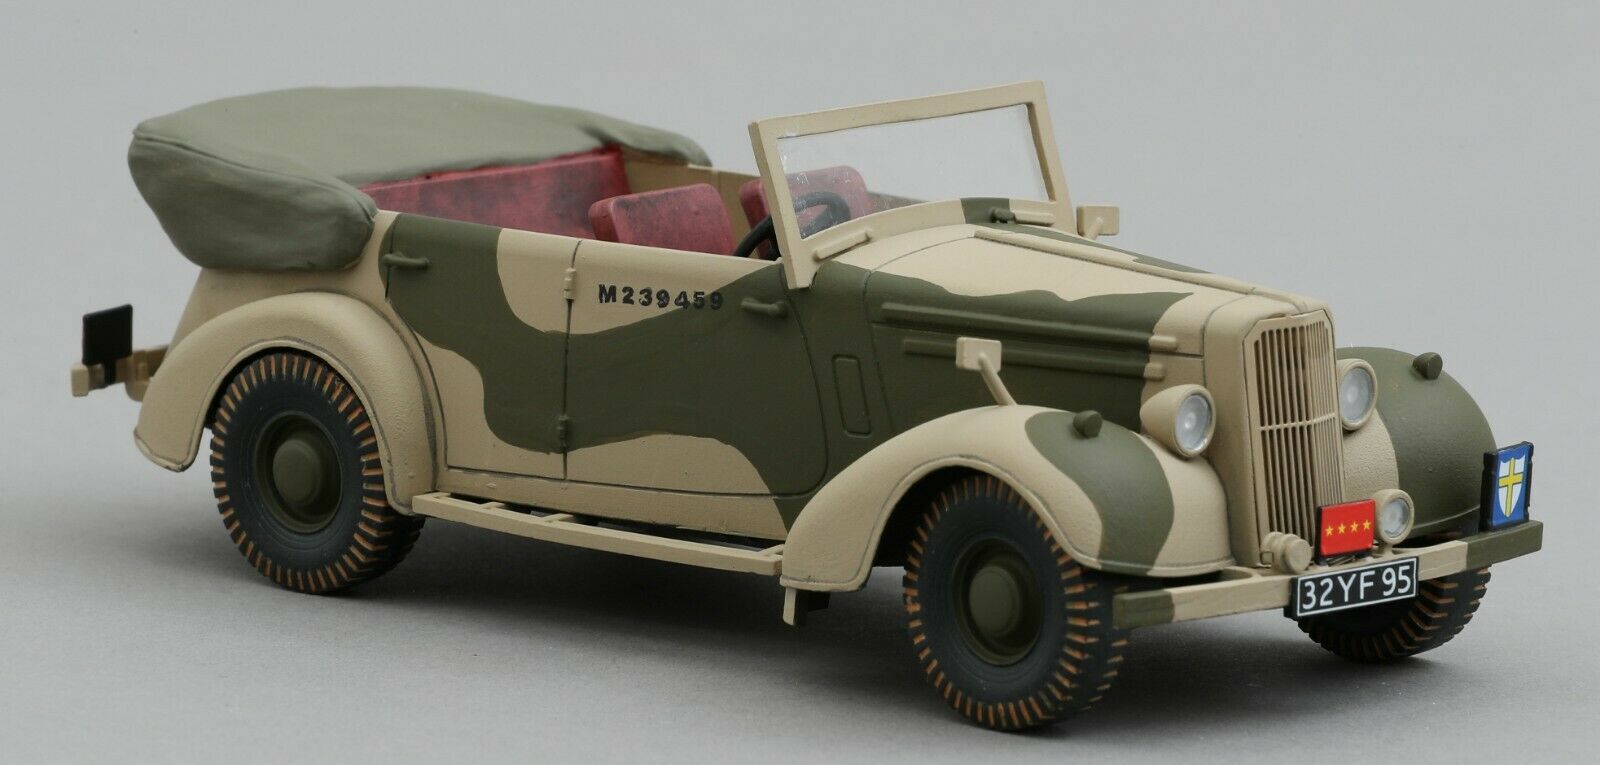 Thomas Gunn Ww2 American Gb011a Allied Staff Car Desert Version Mib